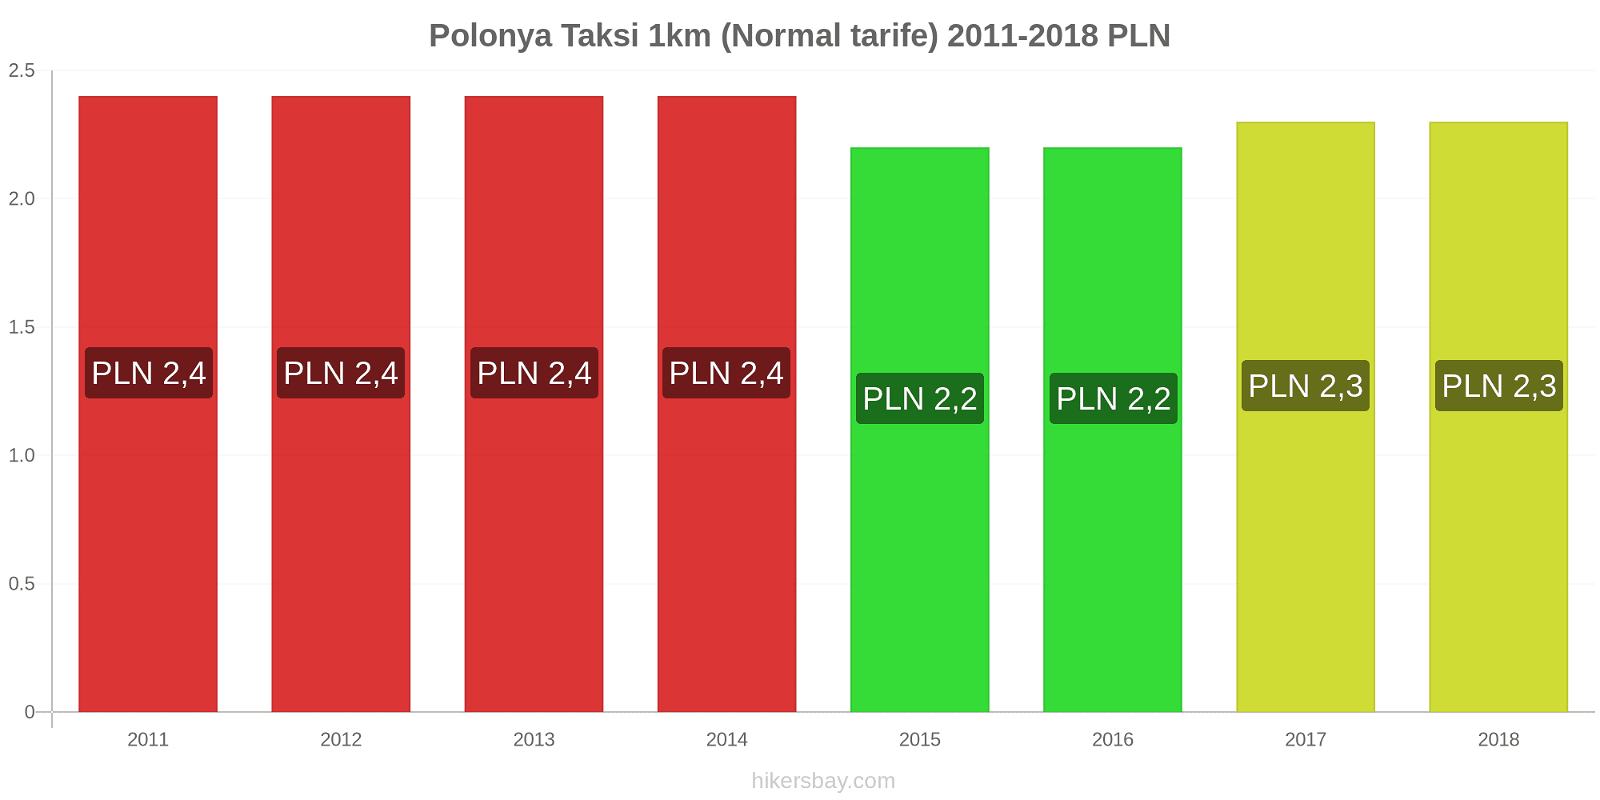 Polonya fiyat değişiklikleri Taksi 1km (Normal tarife) hikersbay.com